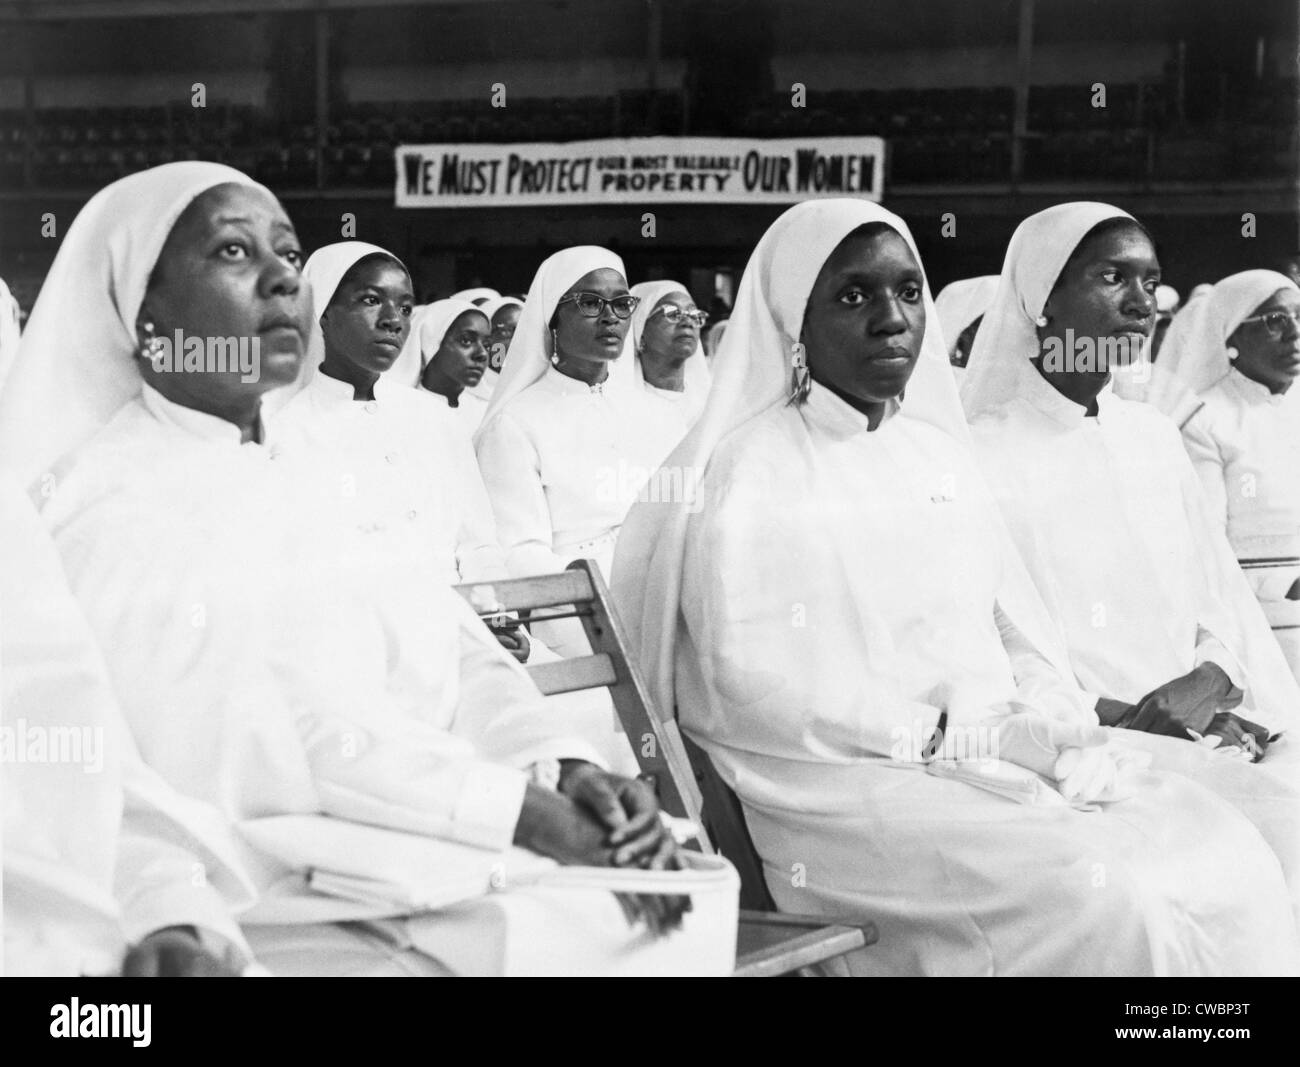 African American Frauen gekleidet in weiß auf einer Nation of Islam-Tagung in New York City.  Hinter den Frauen ein Zeichen liest, "Wir müssen Stockfoto